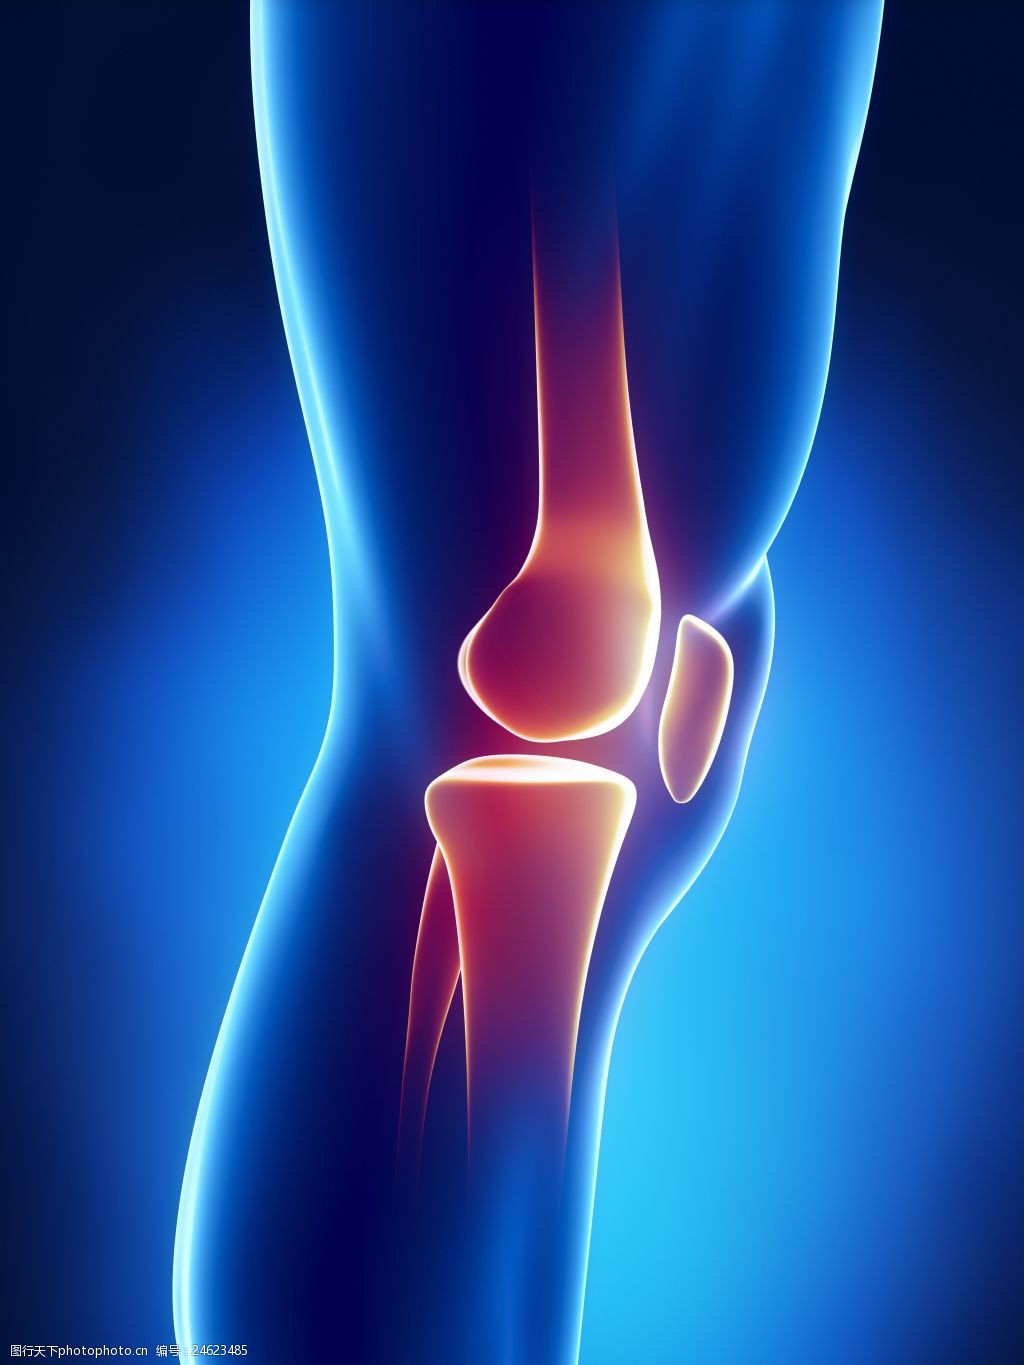 关键词:关节疼痛高清 膝盖 高清图片 骨骼 立体图 模型 人体 医疗